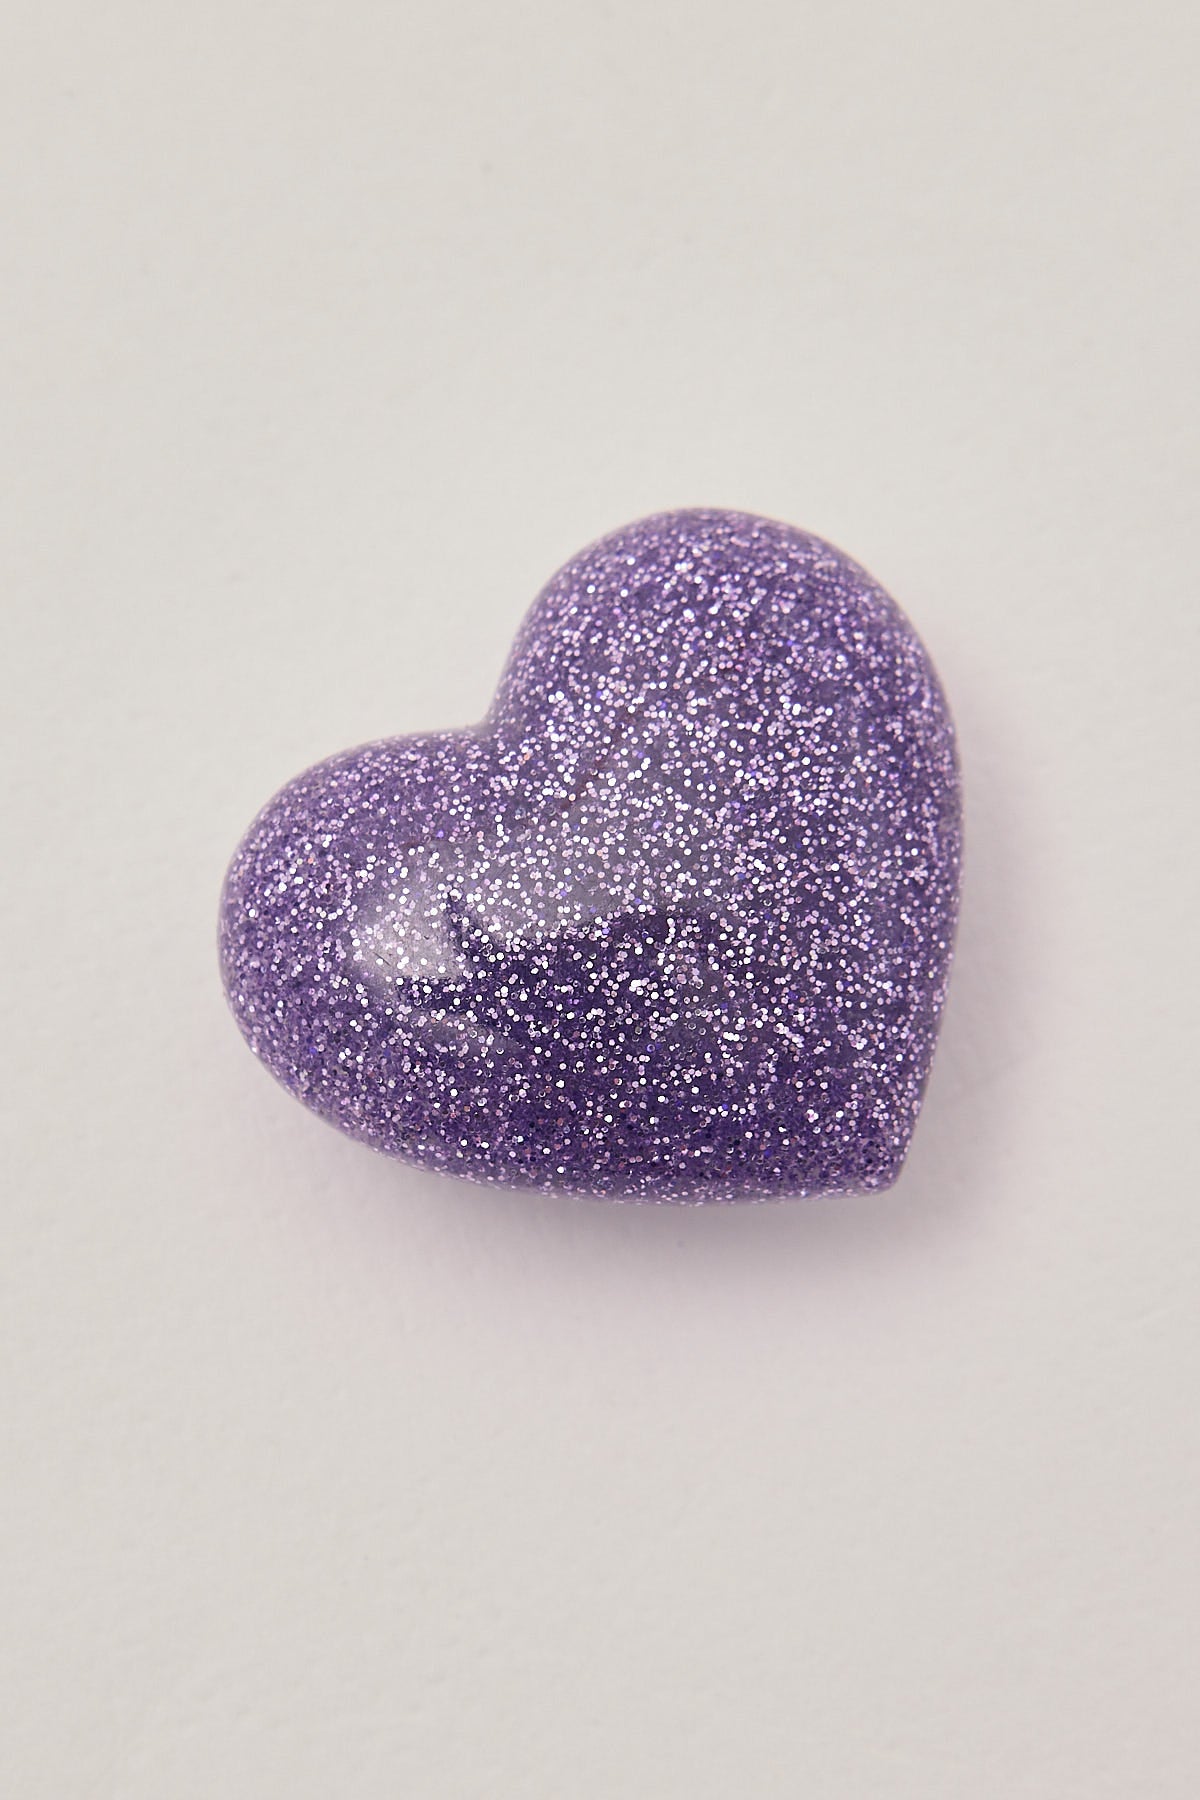 Crocs 3D Glitter Purple Heart Jibbitz Purple